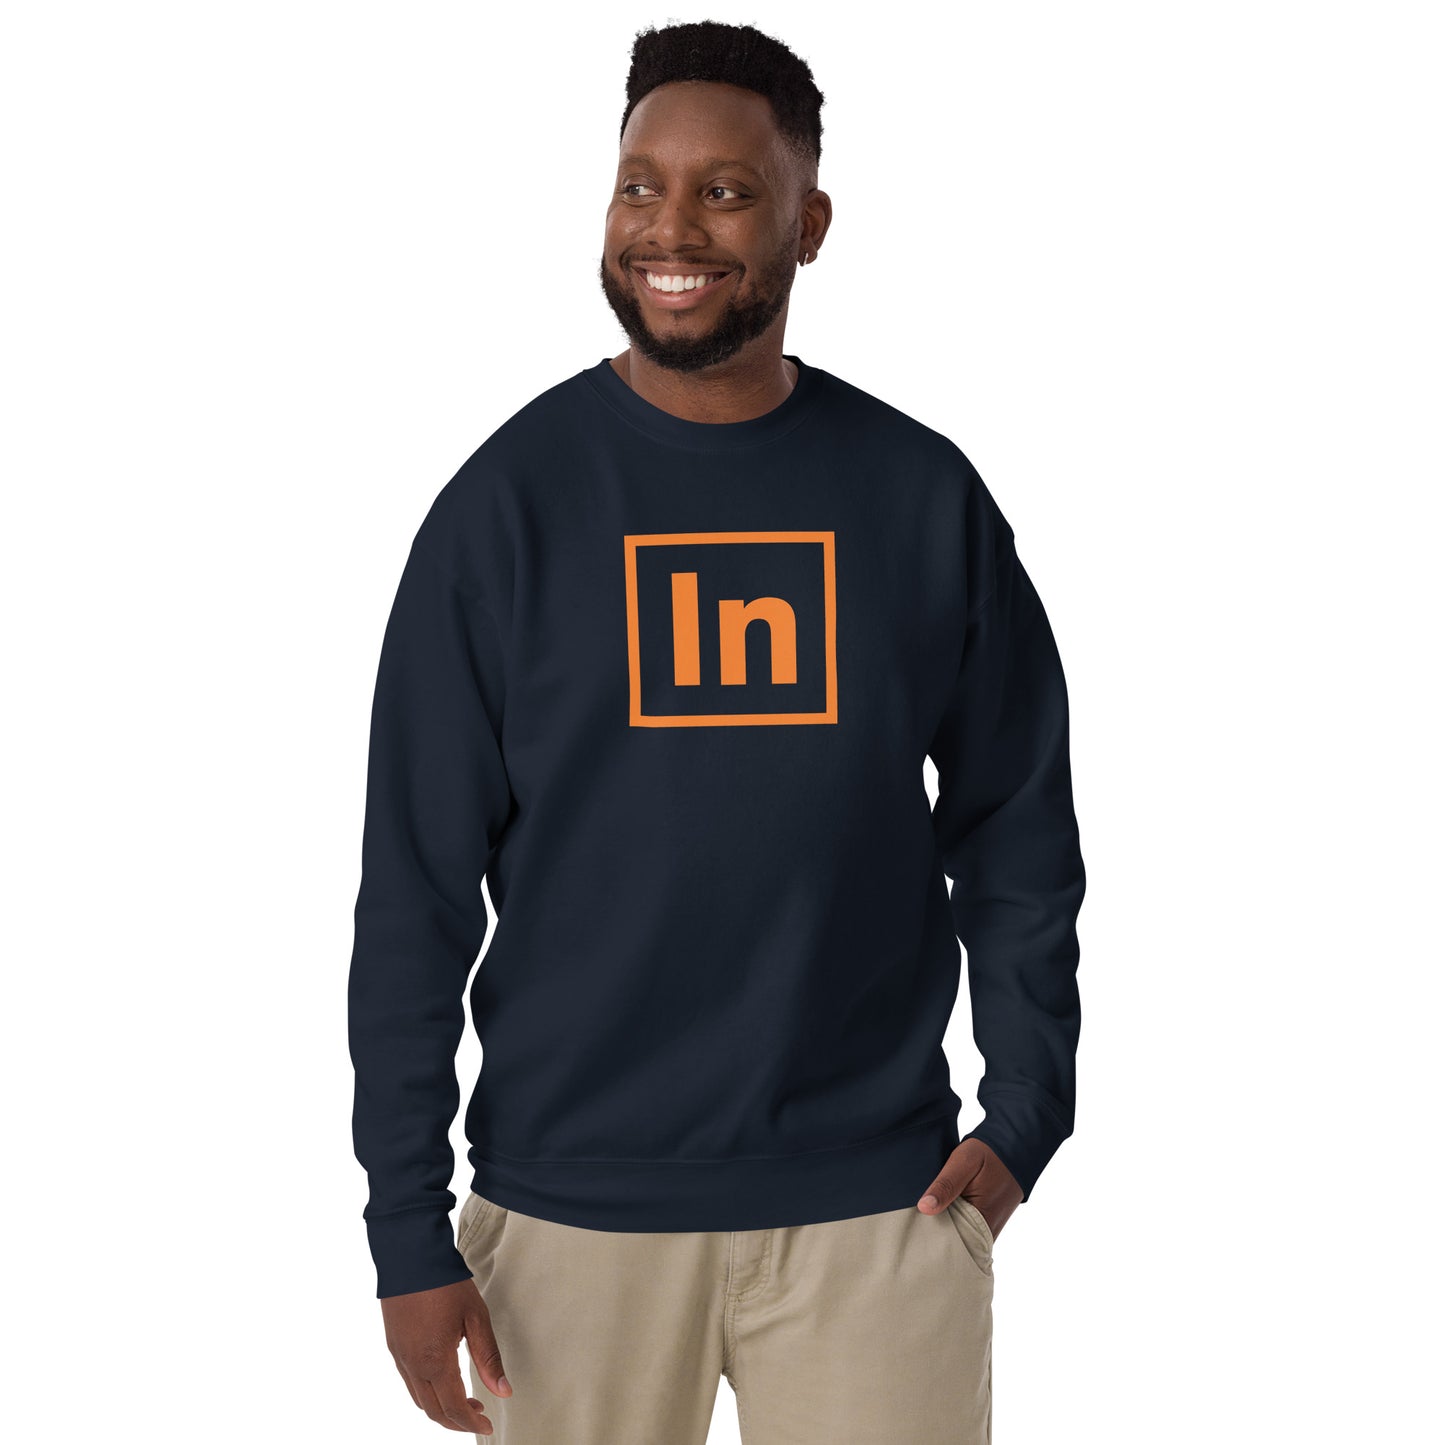 Unisex Premium Sweatshirt (fitted cut) - "In"